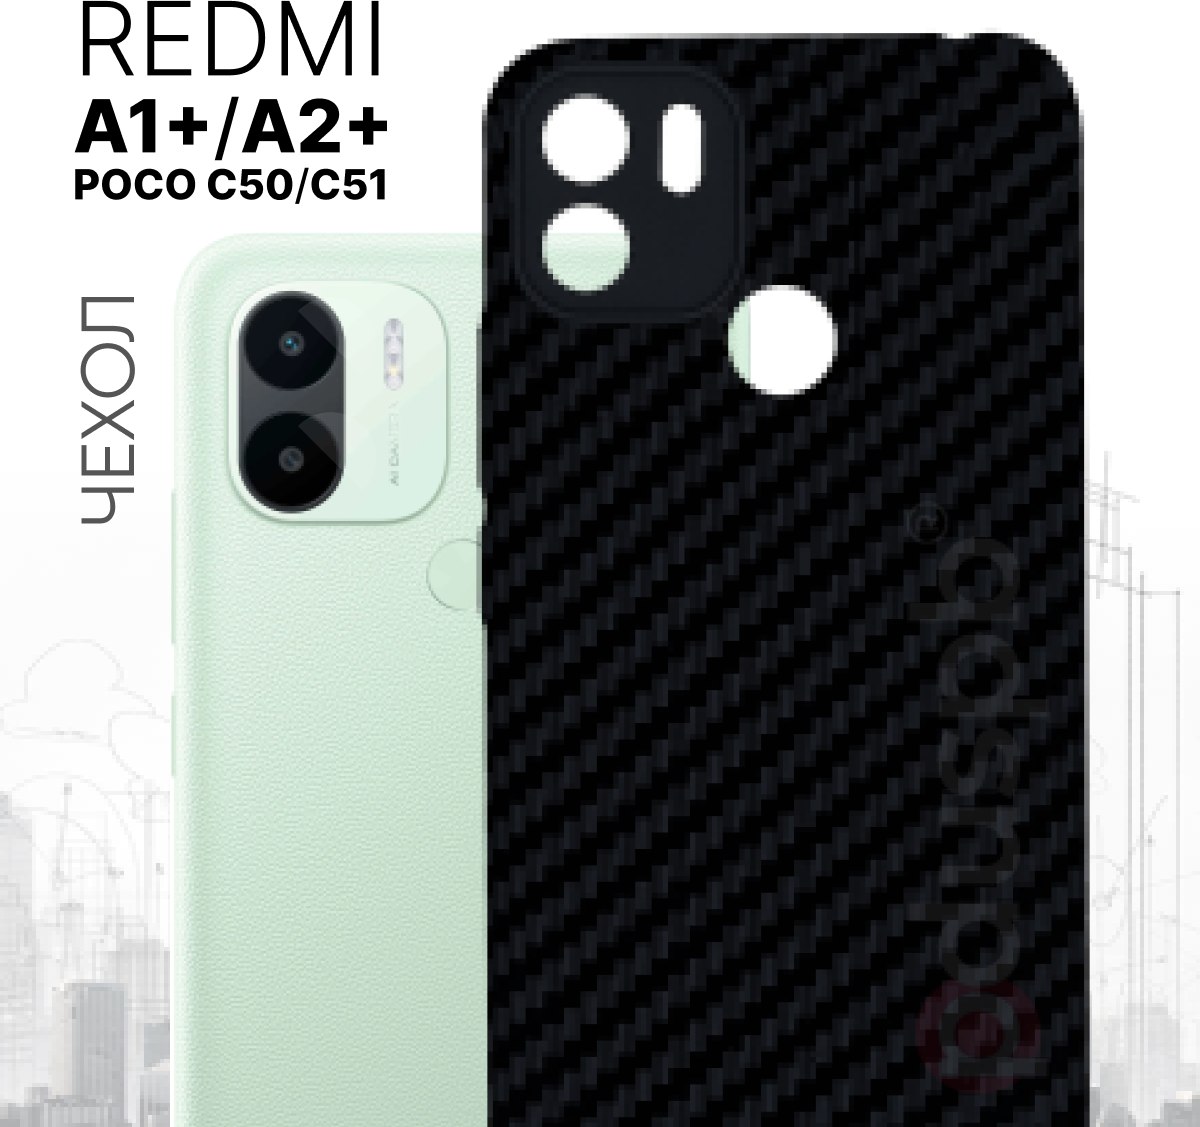 Противоударный cиликоновый черный чехол с текстурой Carbon (карбон) №07 и защитой камеры для Redmi A1+ / A2+ / Poco C50 / C51 / Ксиаоми Редми / Поко